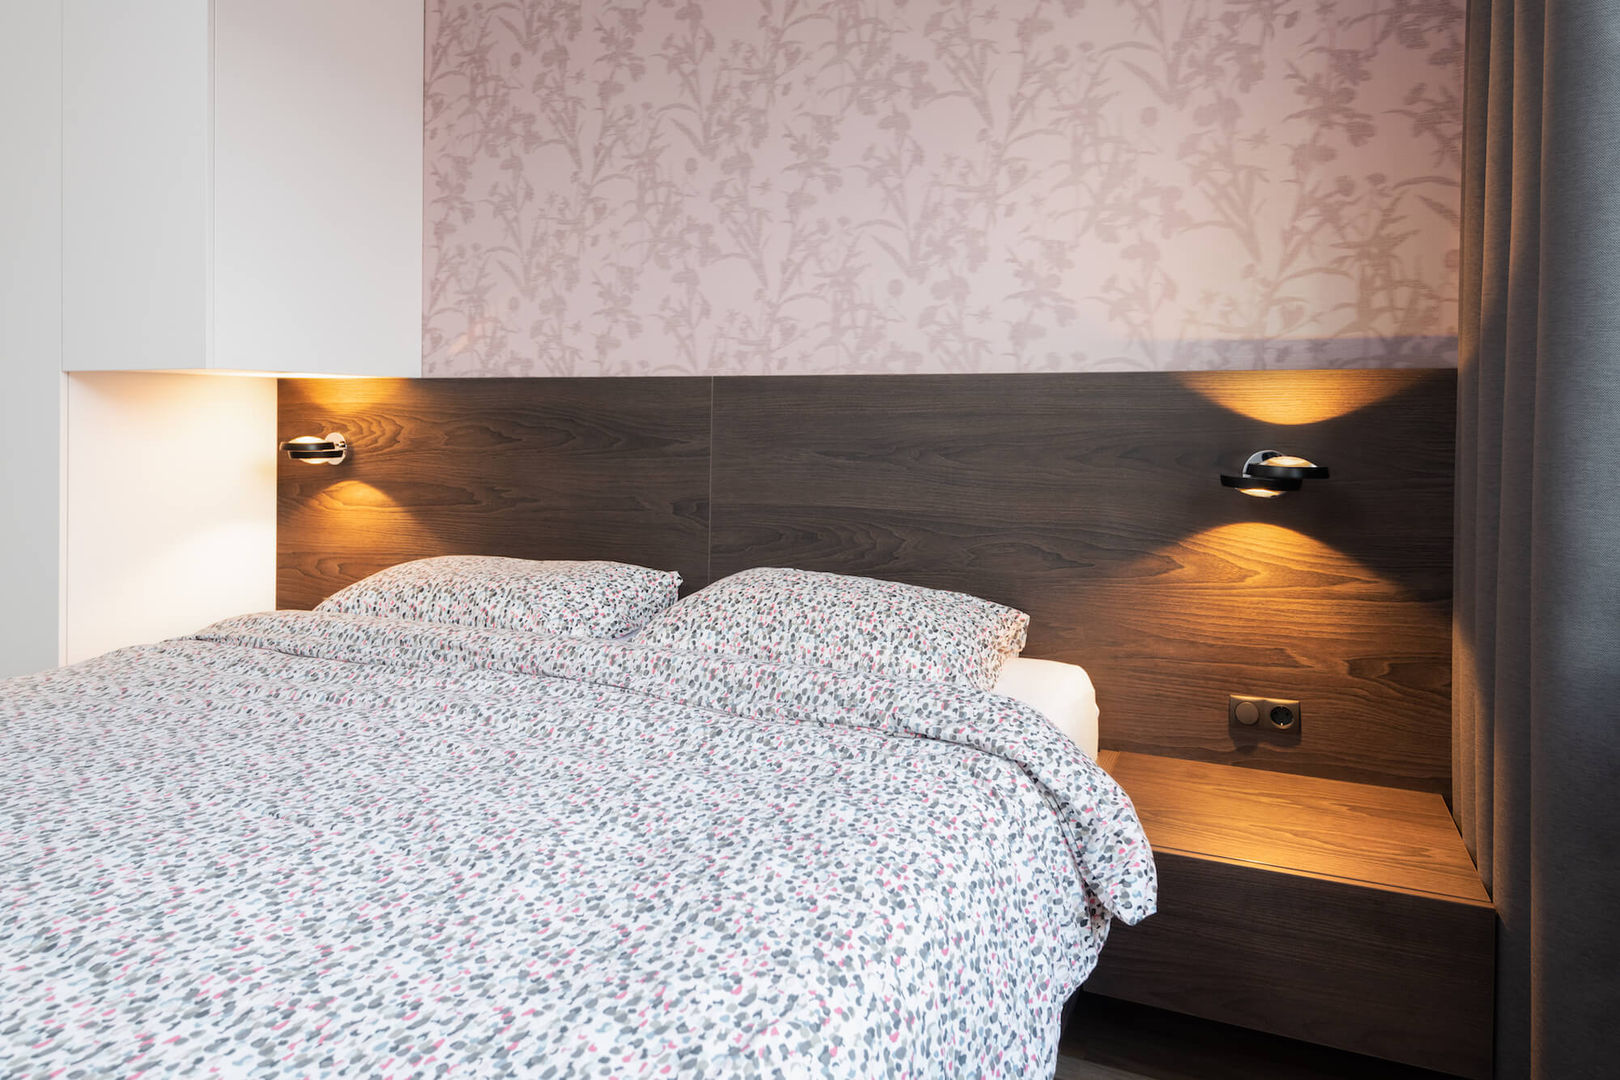 Kleine slaapkamer met kast boven het bed, De Suite De Suite Small bedroom